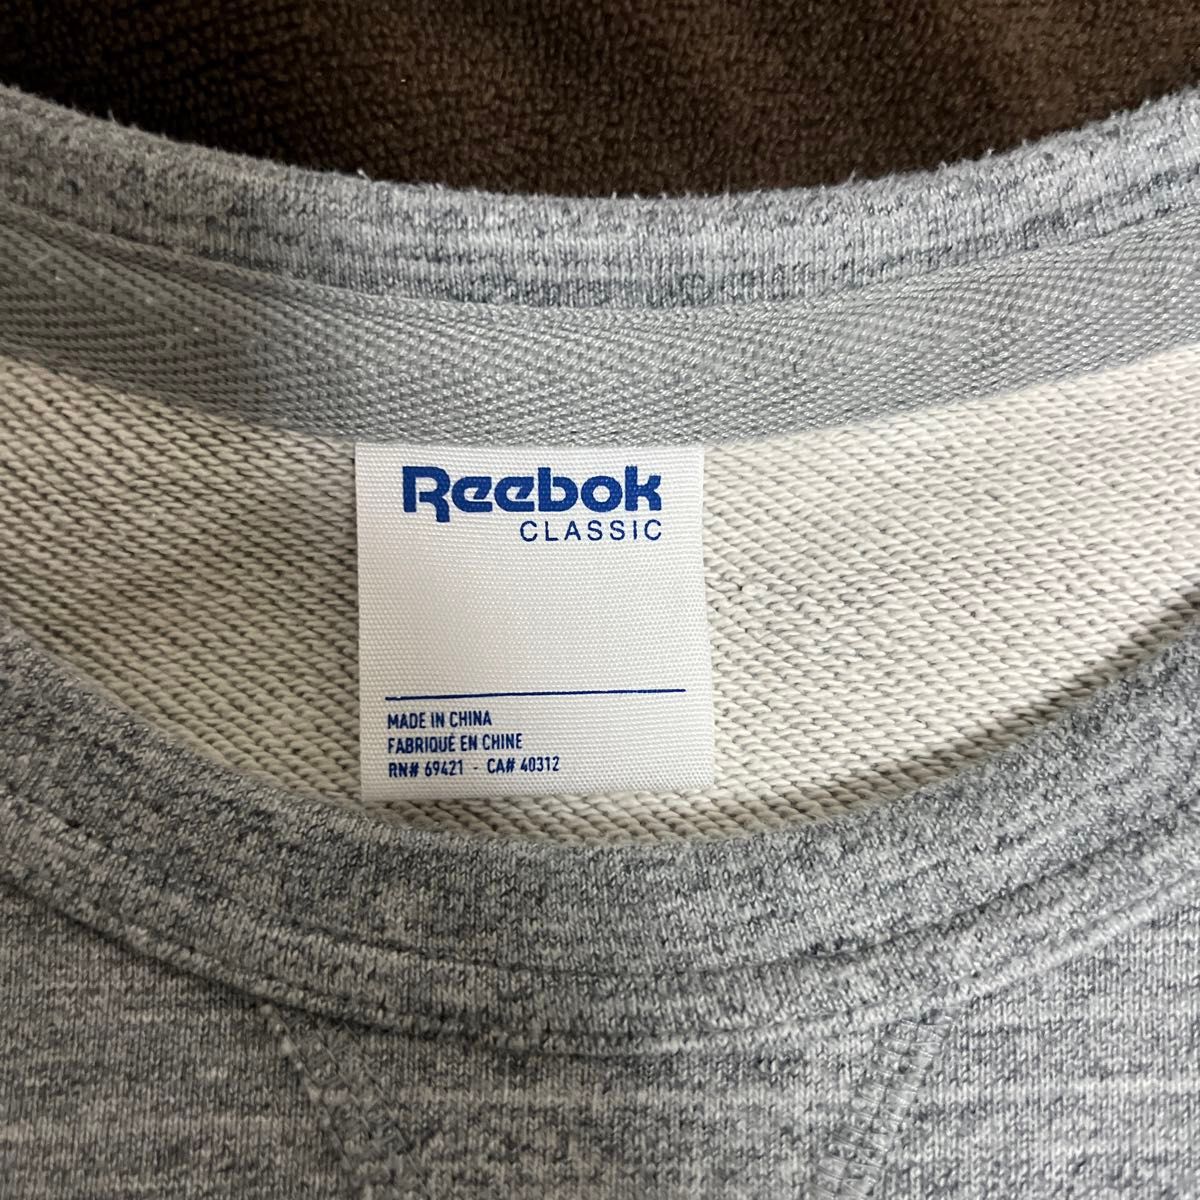 Reebok Classic リーボッククラシック スウェットトレーナー